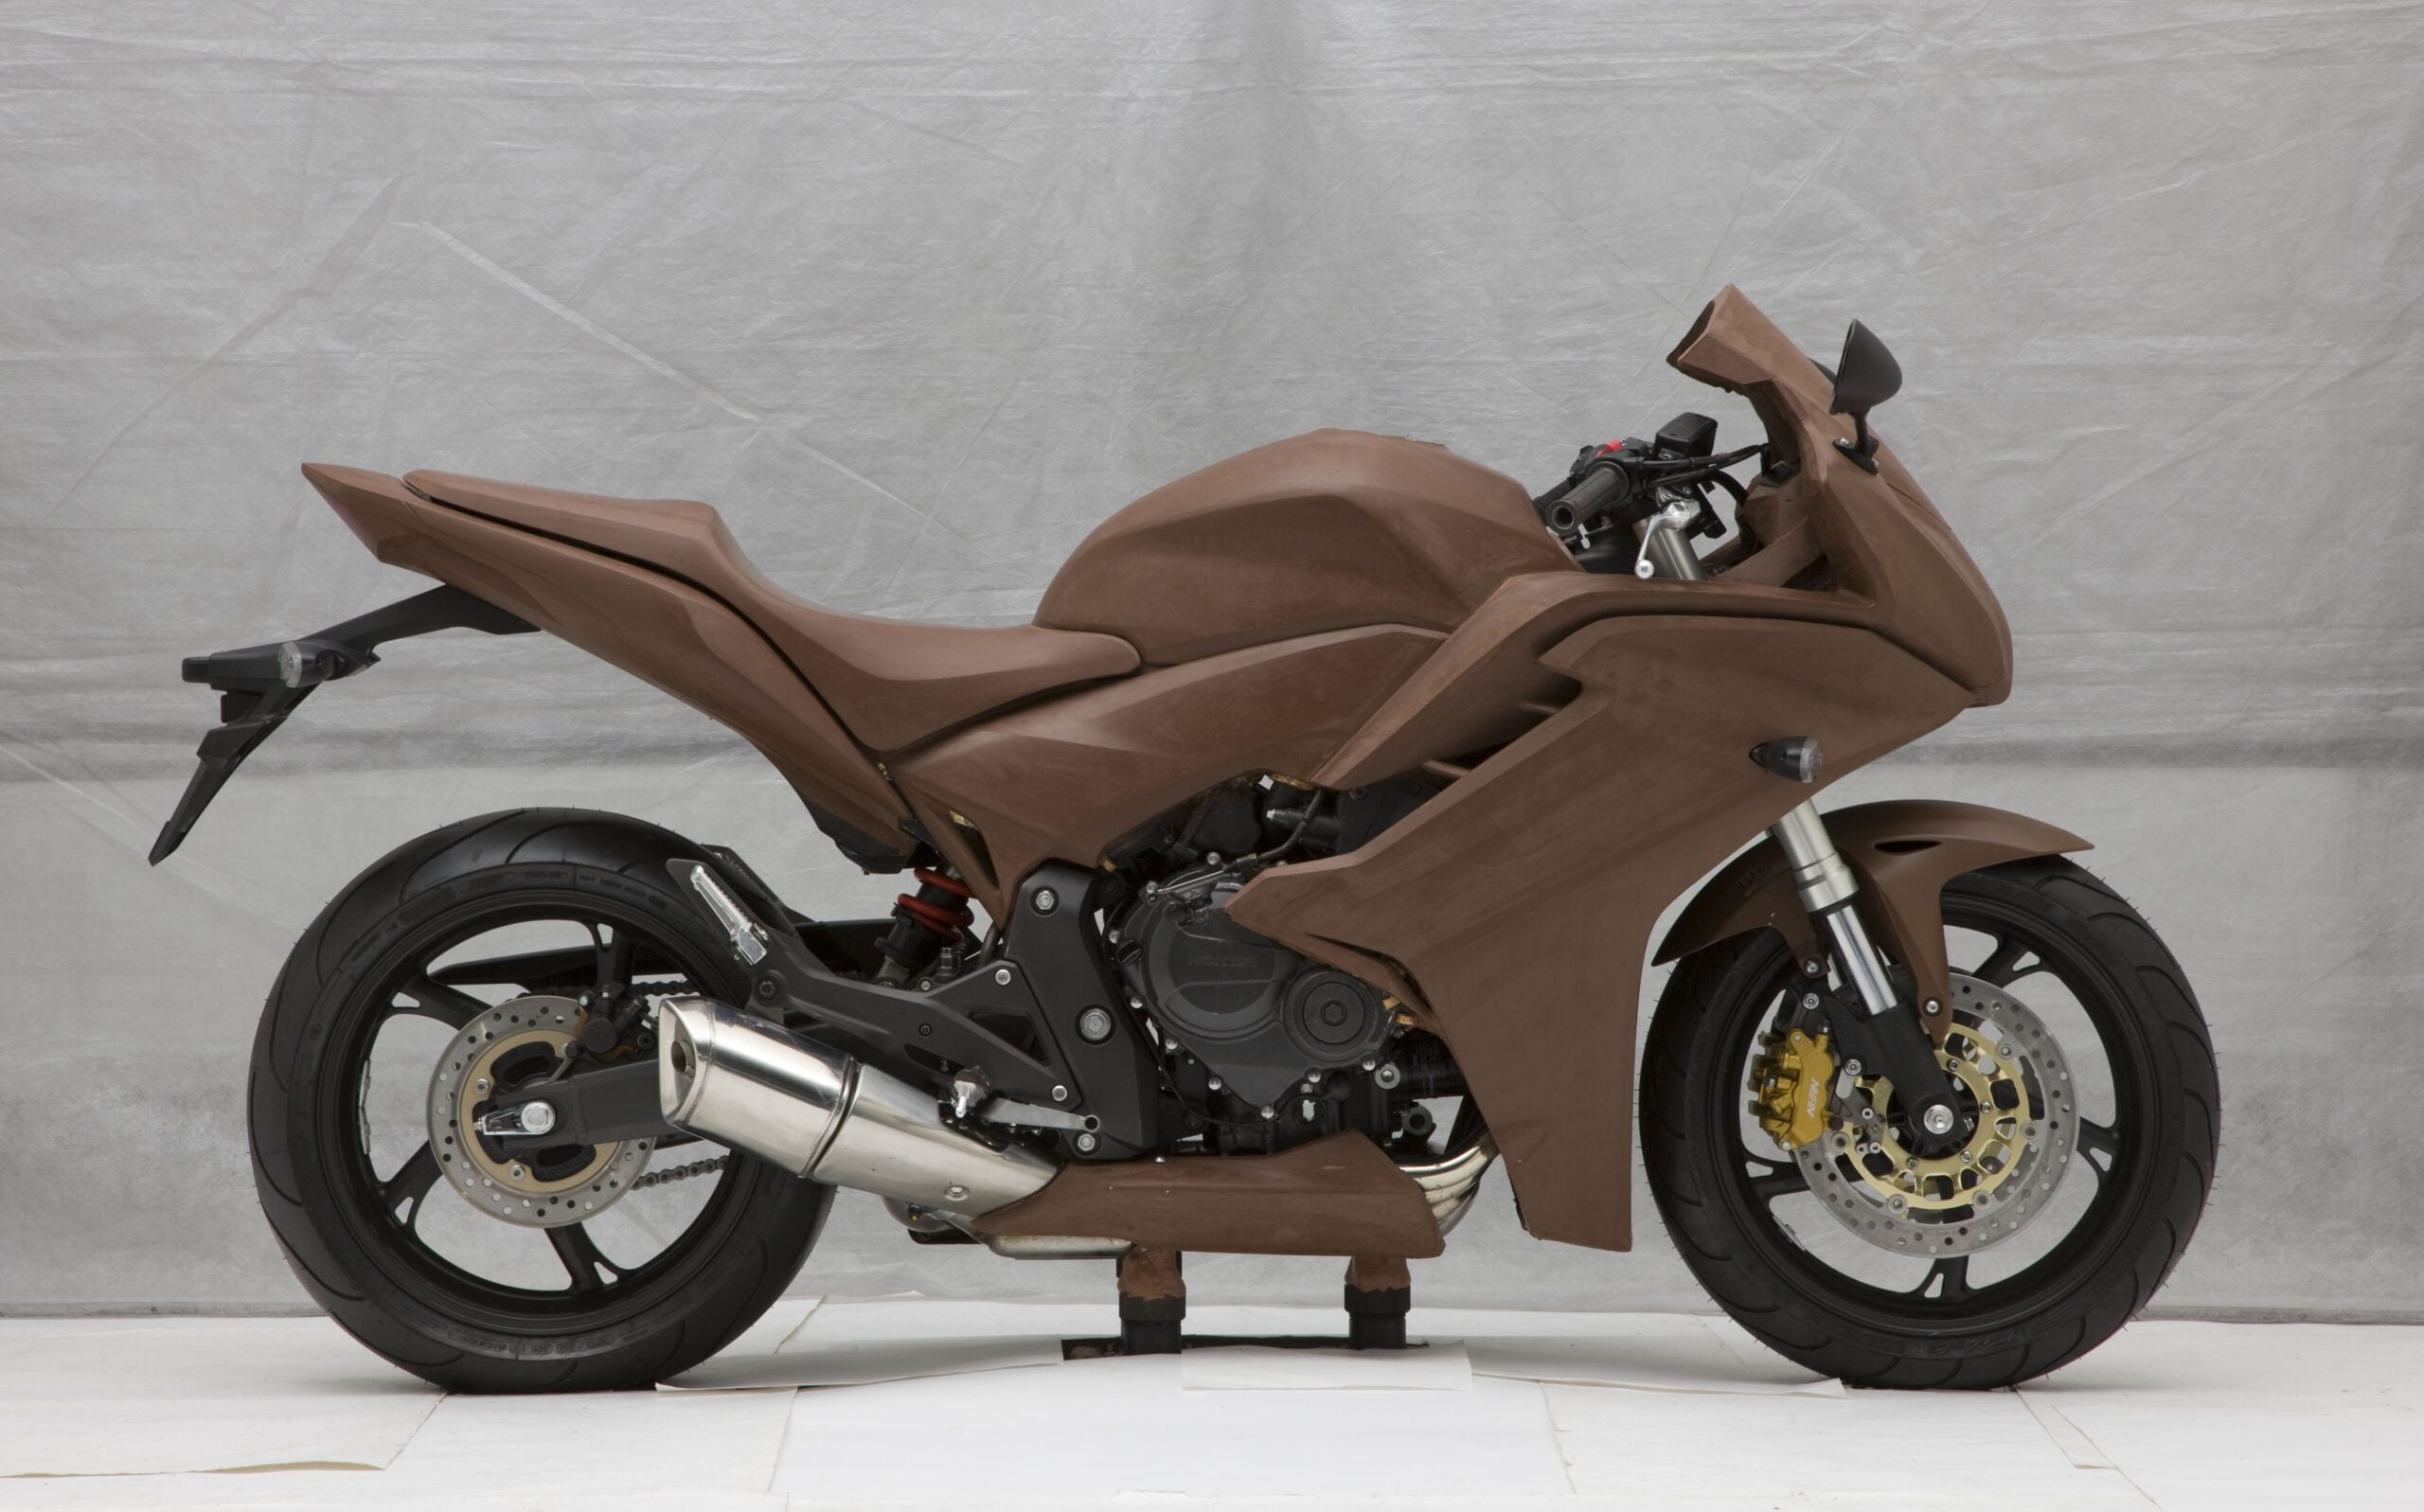 [Street] Honda révolutionne le design avec des prototypes de motos imprimés en 3D